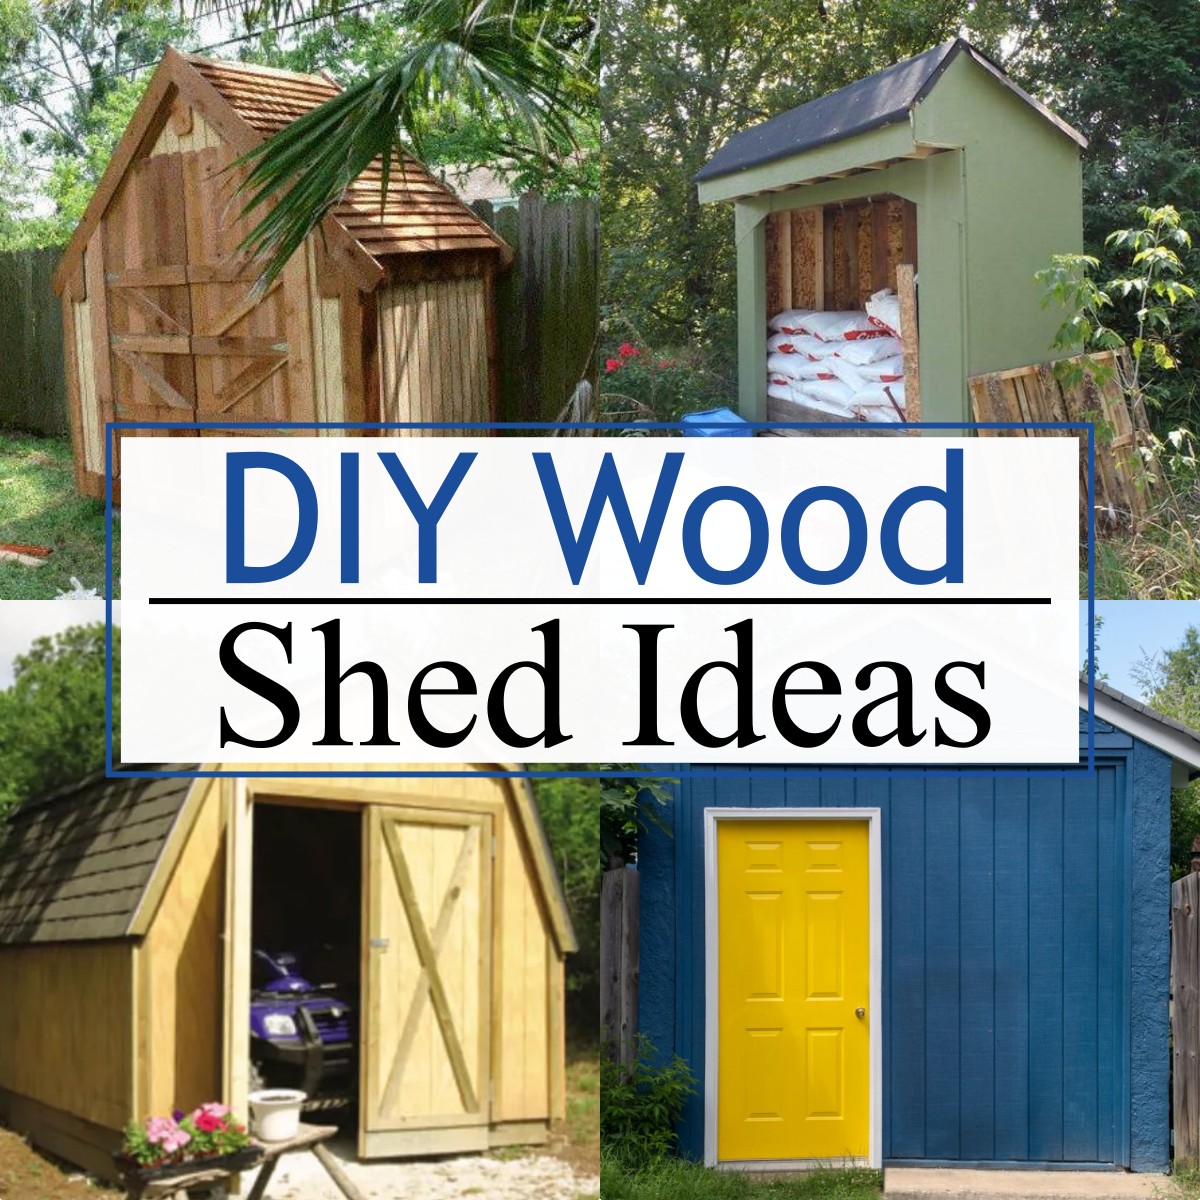 DIY Wood Shed Ideas